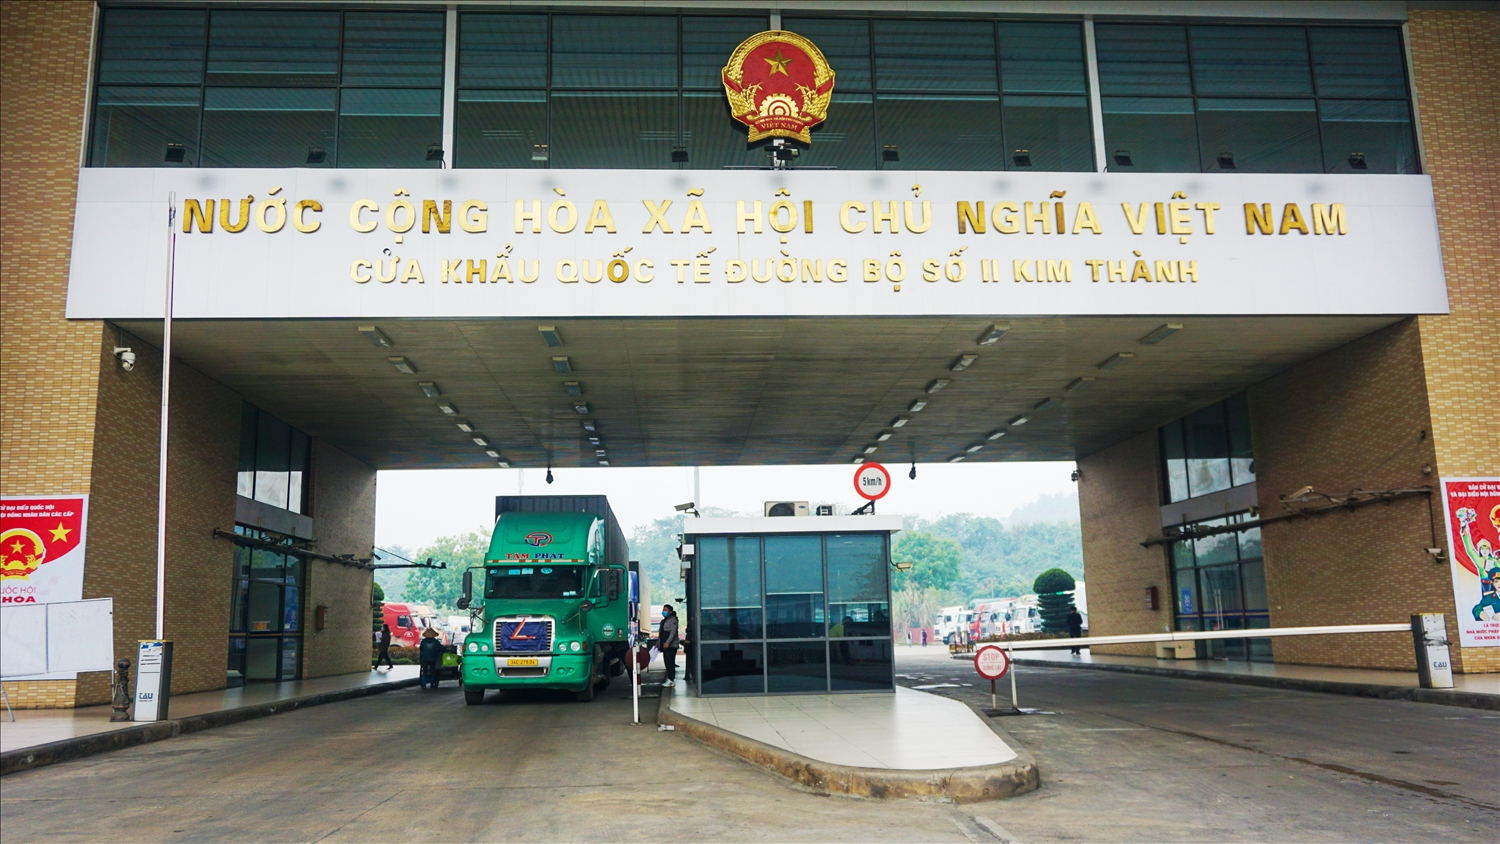 Việc thông quan tại Cửa khẩu Lào Cai đang gặp khó khăn do thiếu lái xe trung chuyển